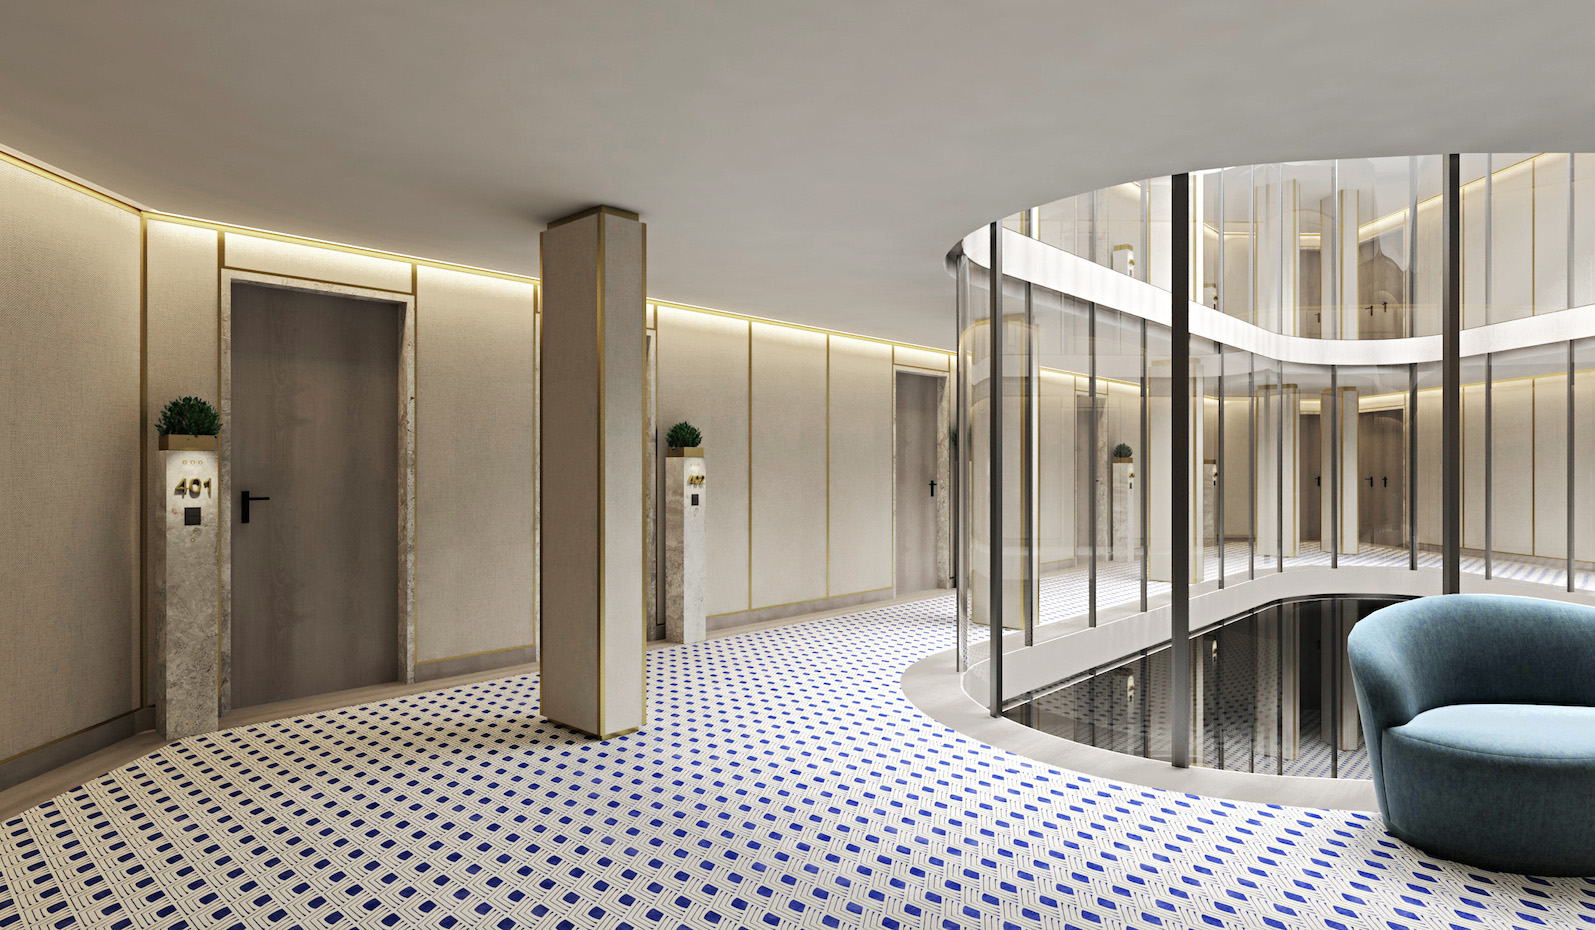 Acceso a las habitaciones. El mármol Serpeggiante del hall de entrada a las habitaciones crea el efecto de una gran alfombra contemporánea